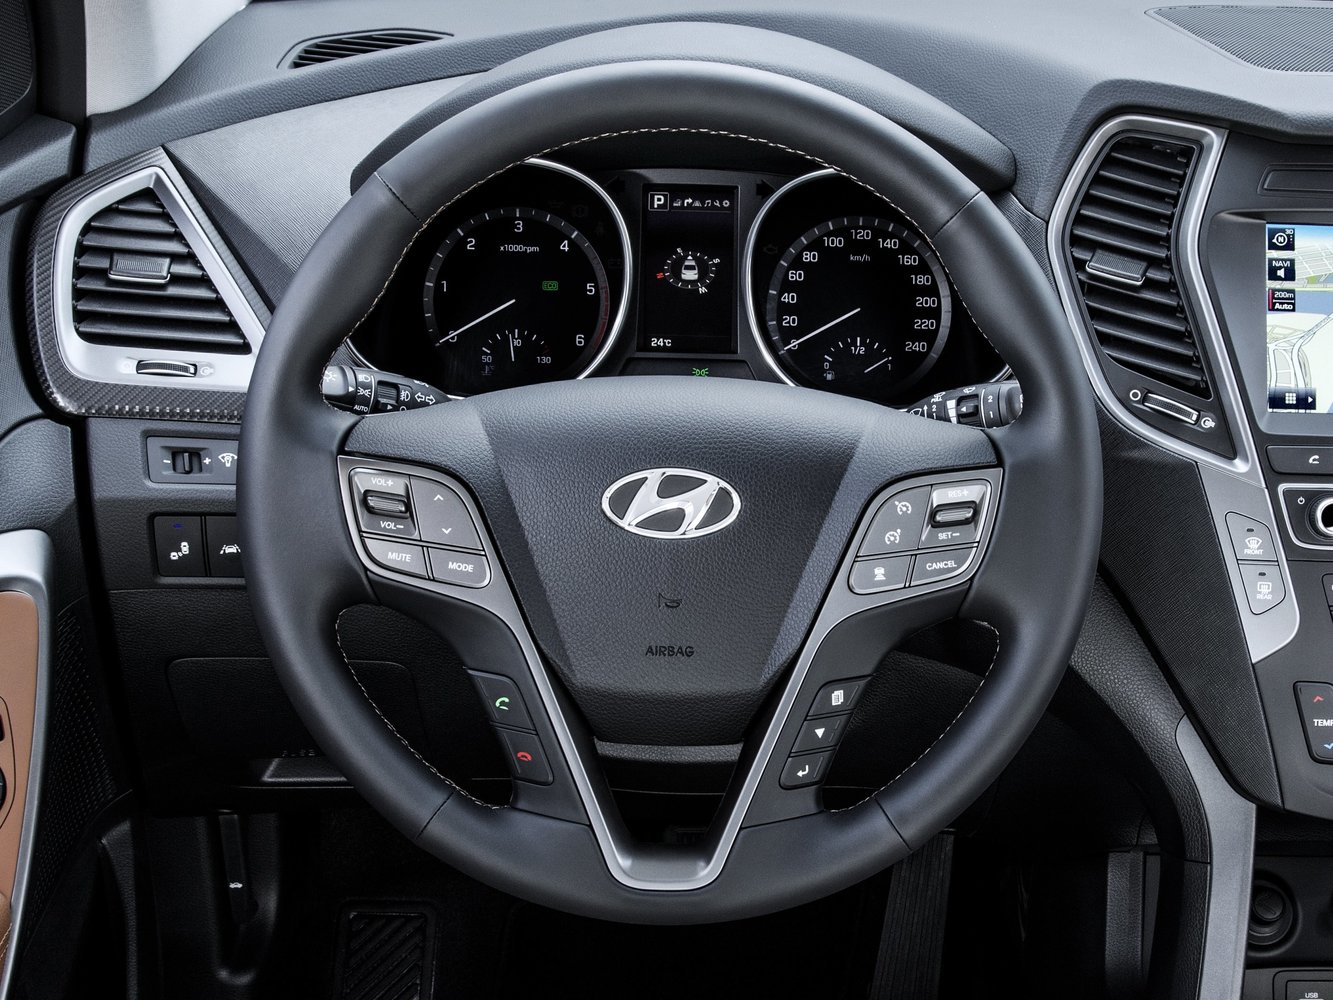 кроссовер Hyundai Santa Fe 2015 - 2016г выпуска модификация 2.0 MT (150 л.с.)